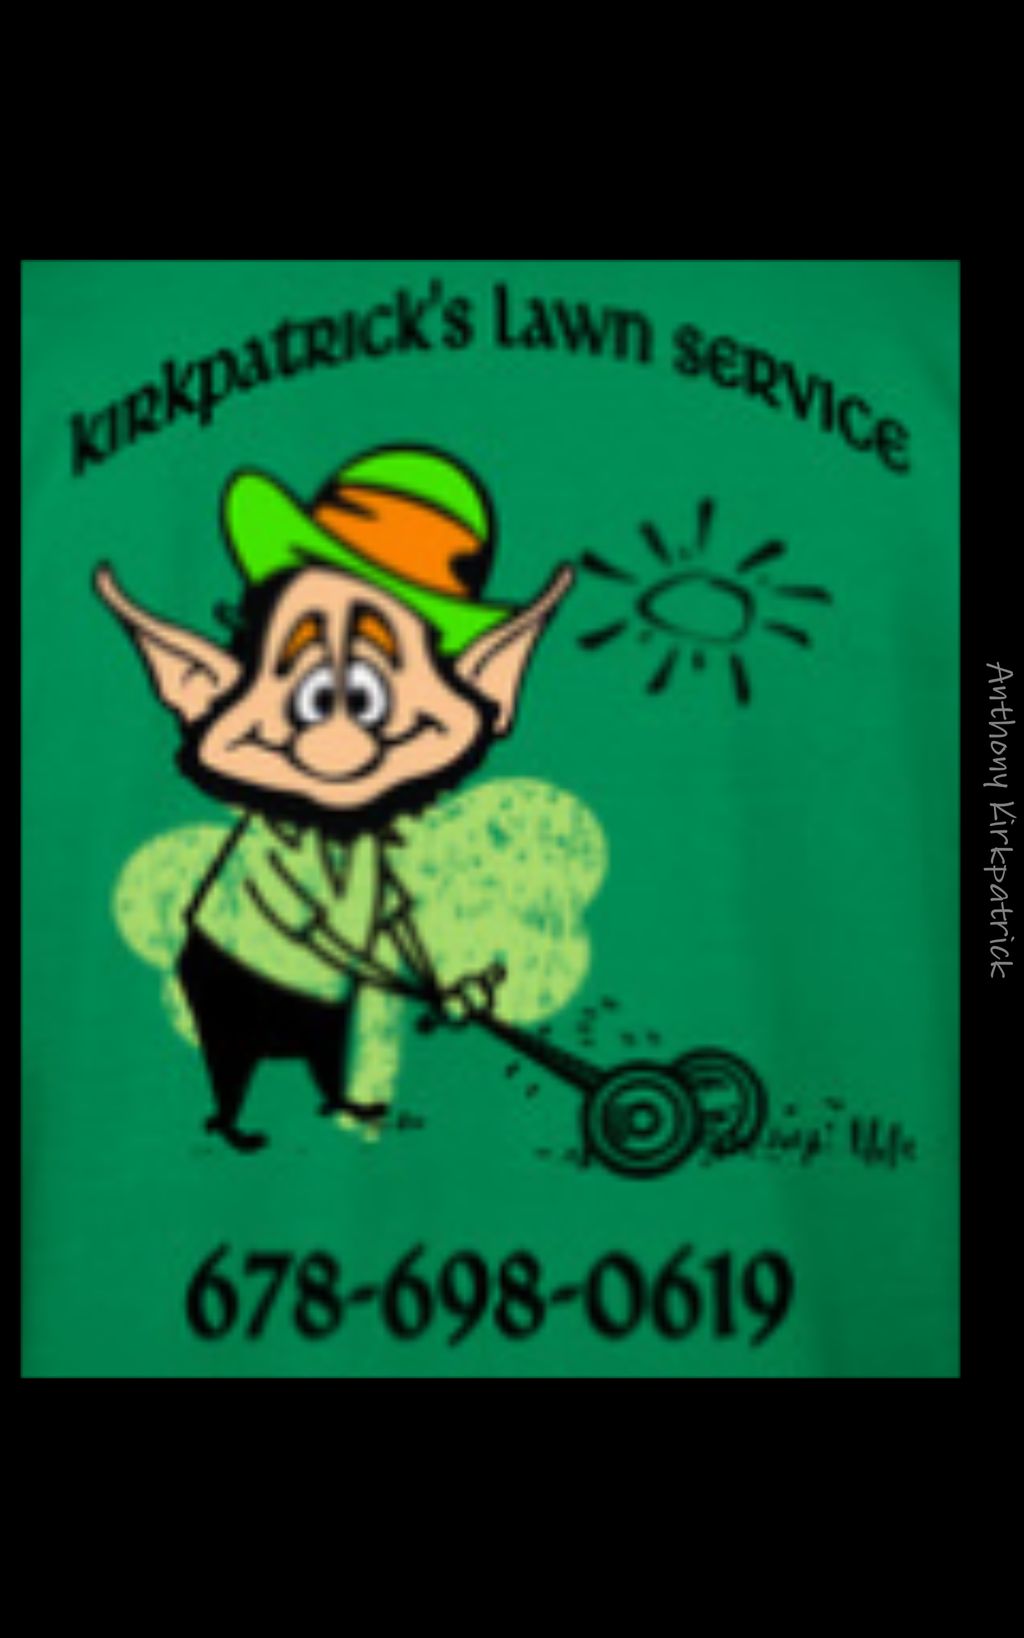 Kirkpatricks lawn service